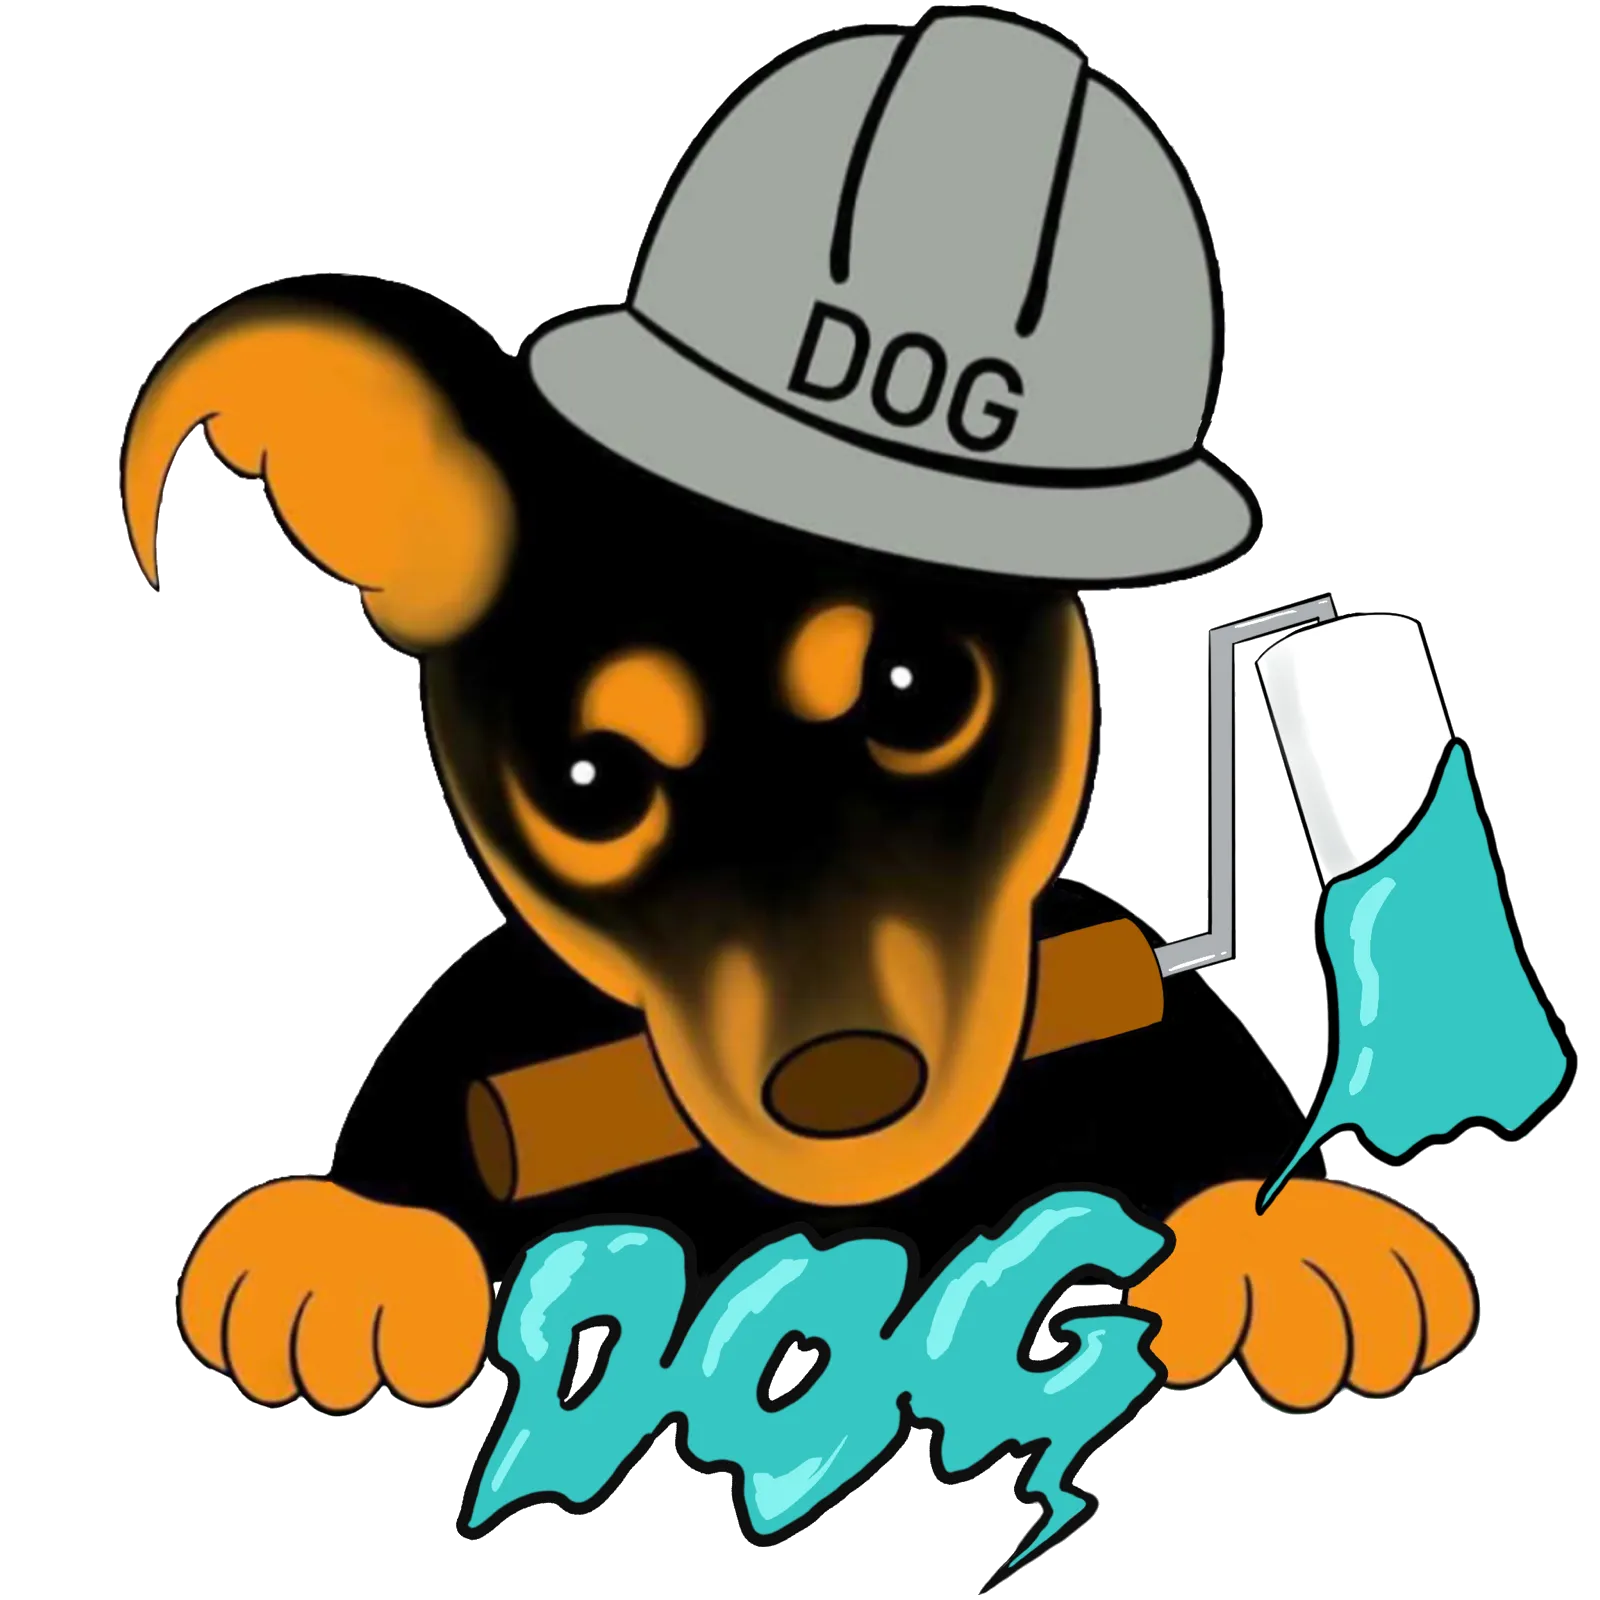 DOG株式会社ではホームページをリニューアルいたしました。